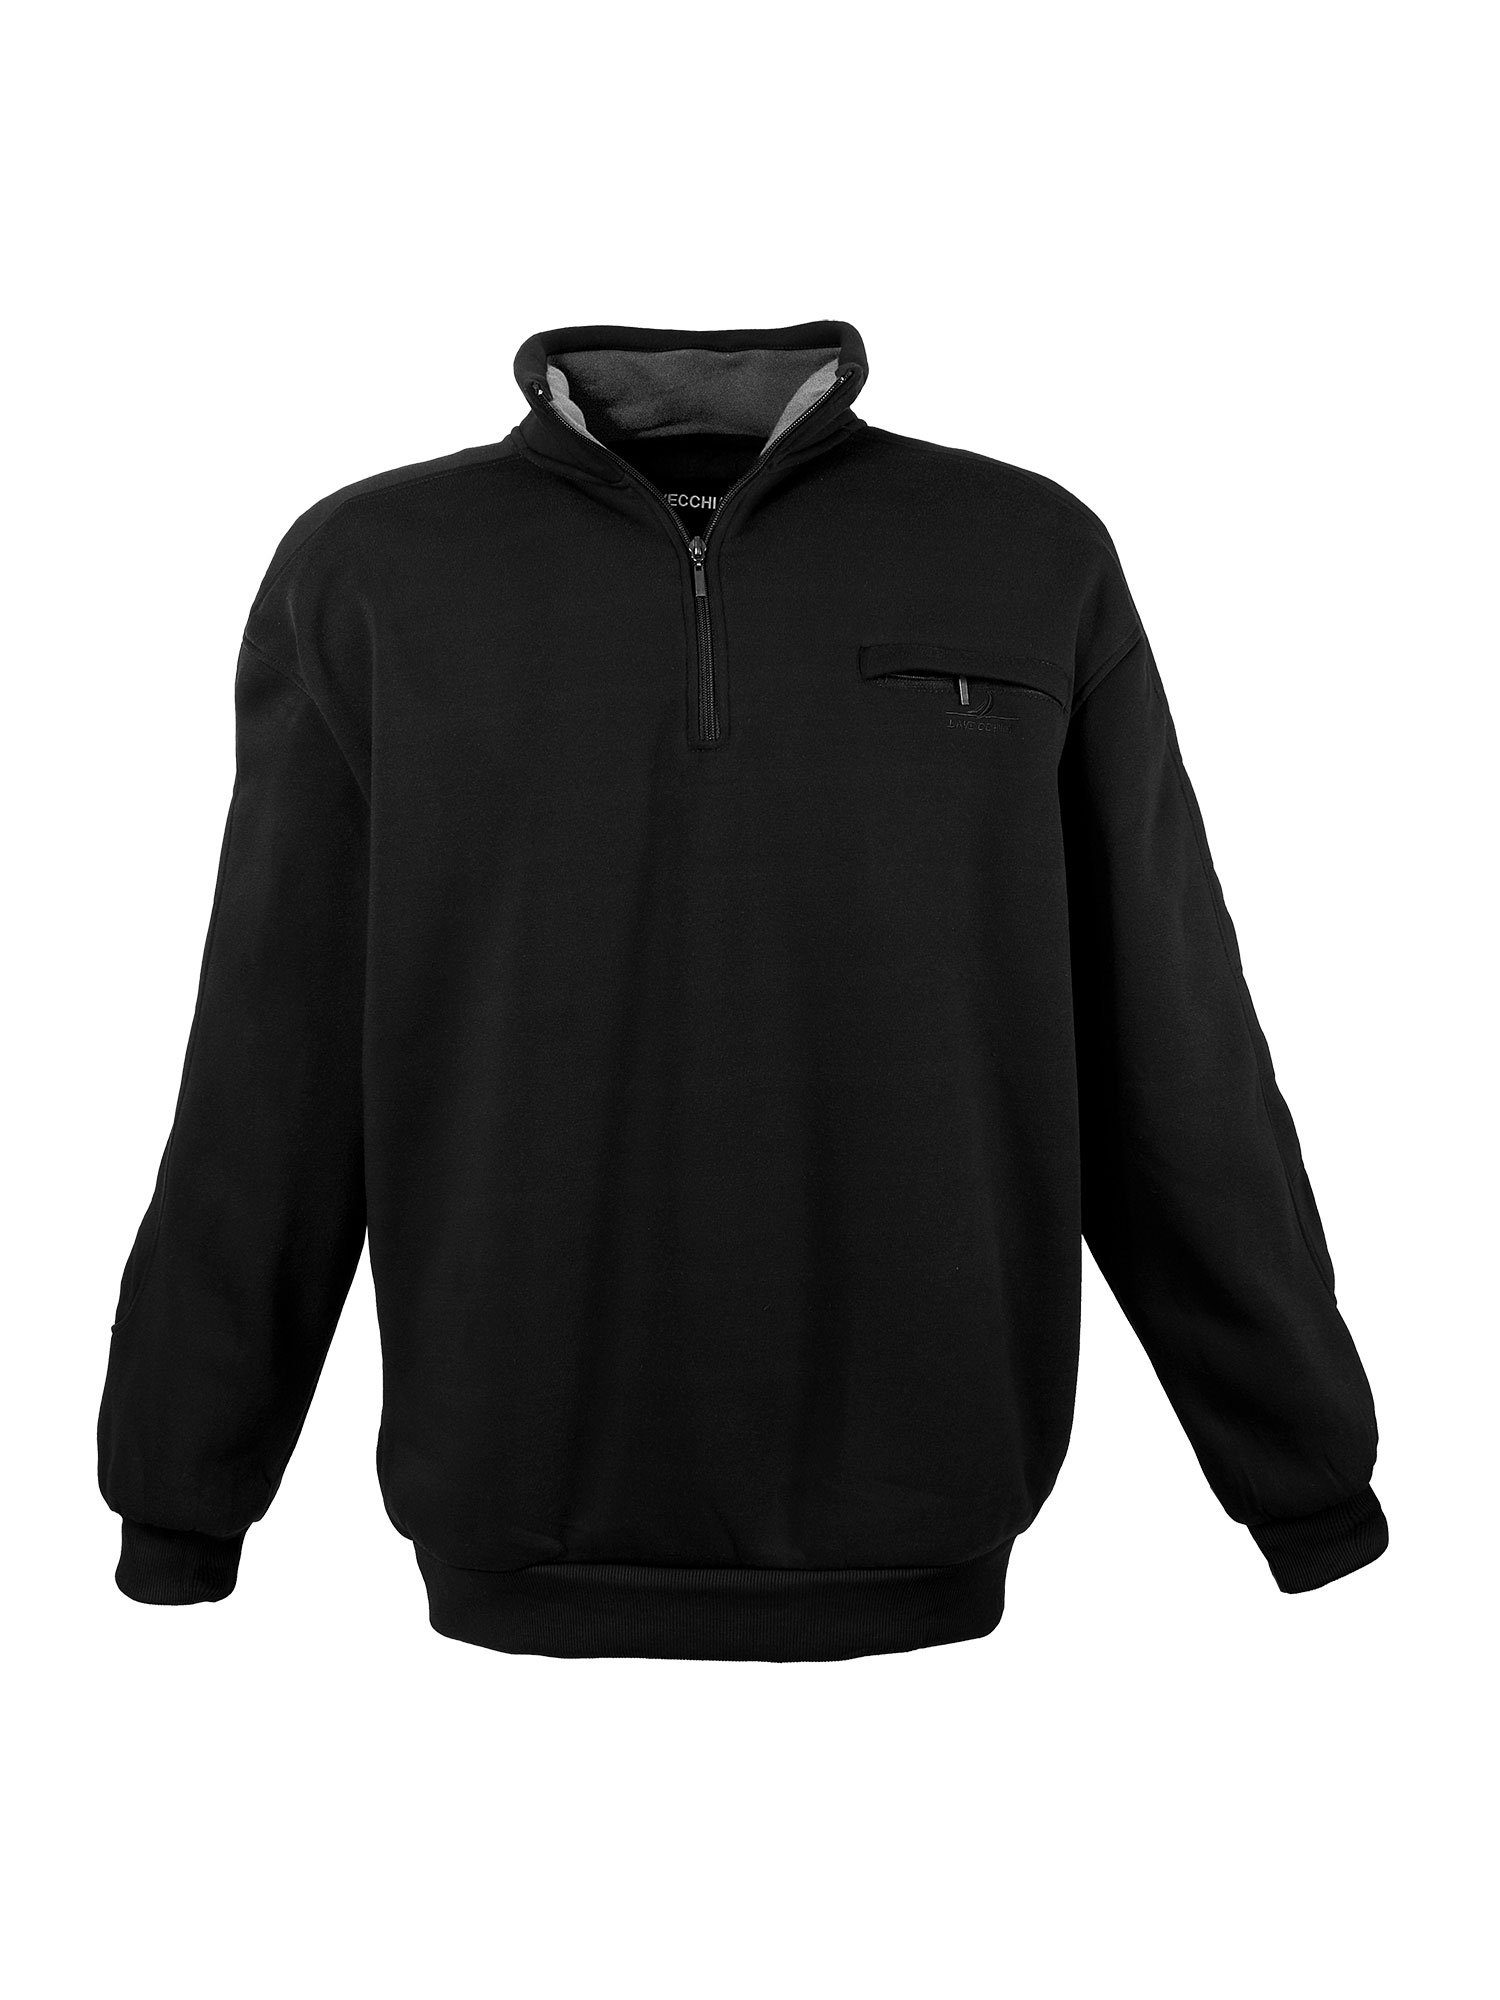 Sweatjacke Sweatshirt Sweater Übergrößen Lavecchia LV-2100